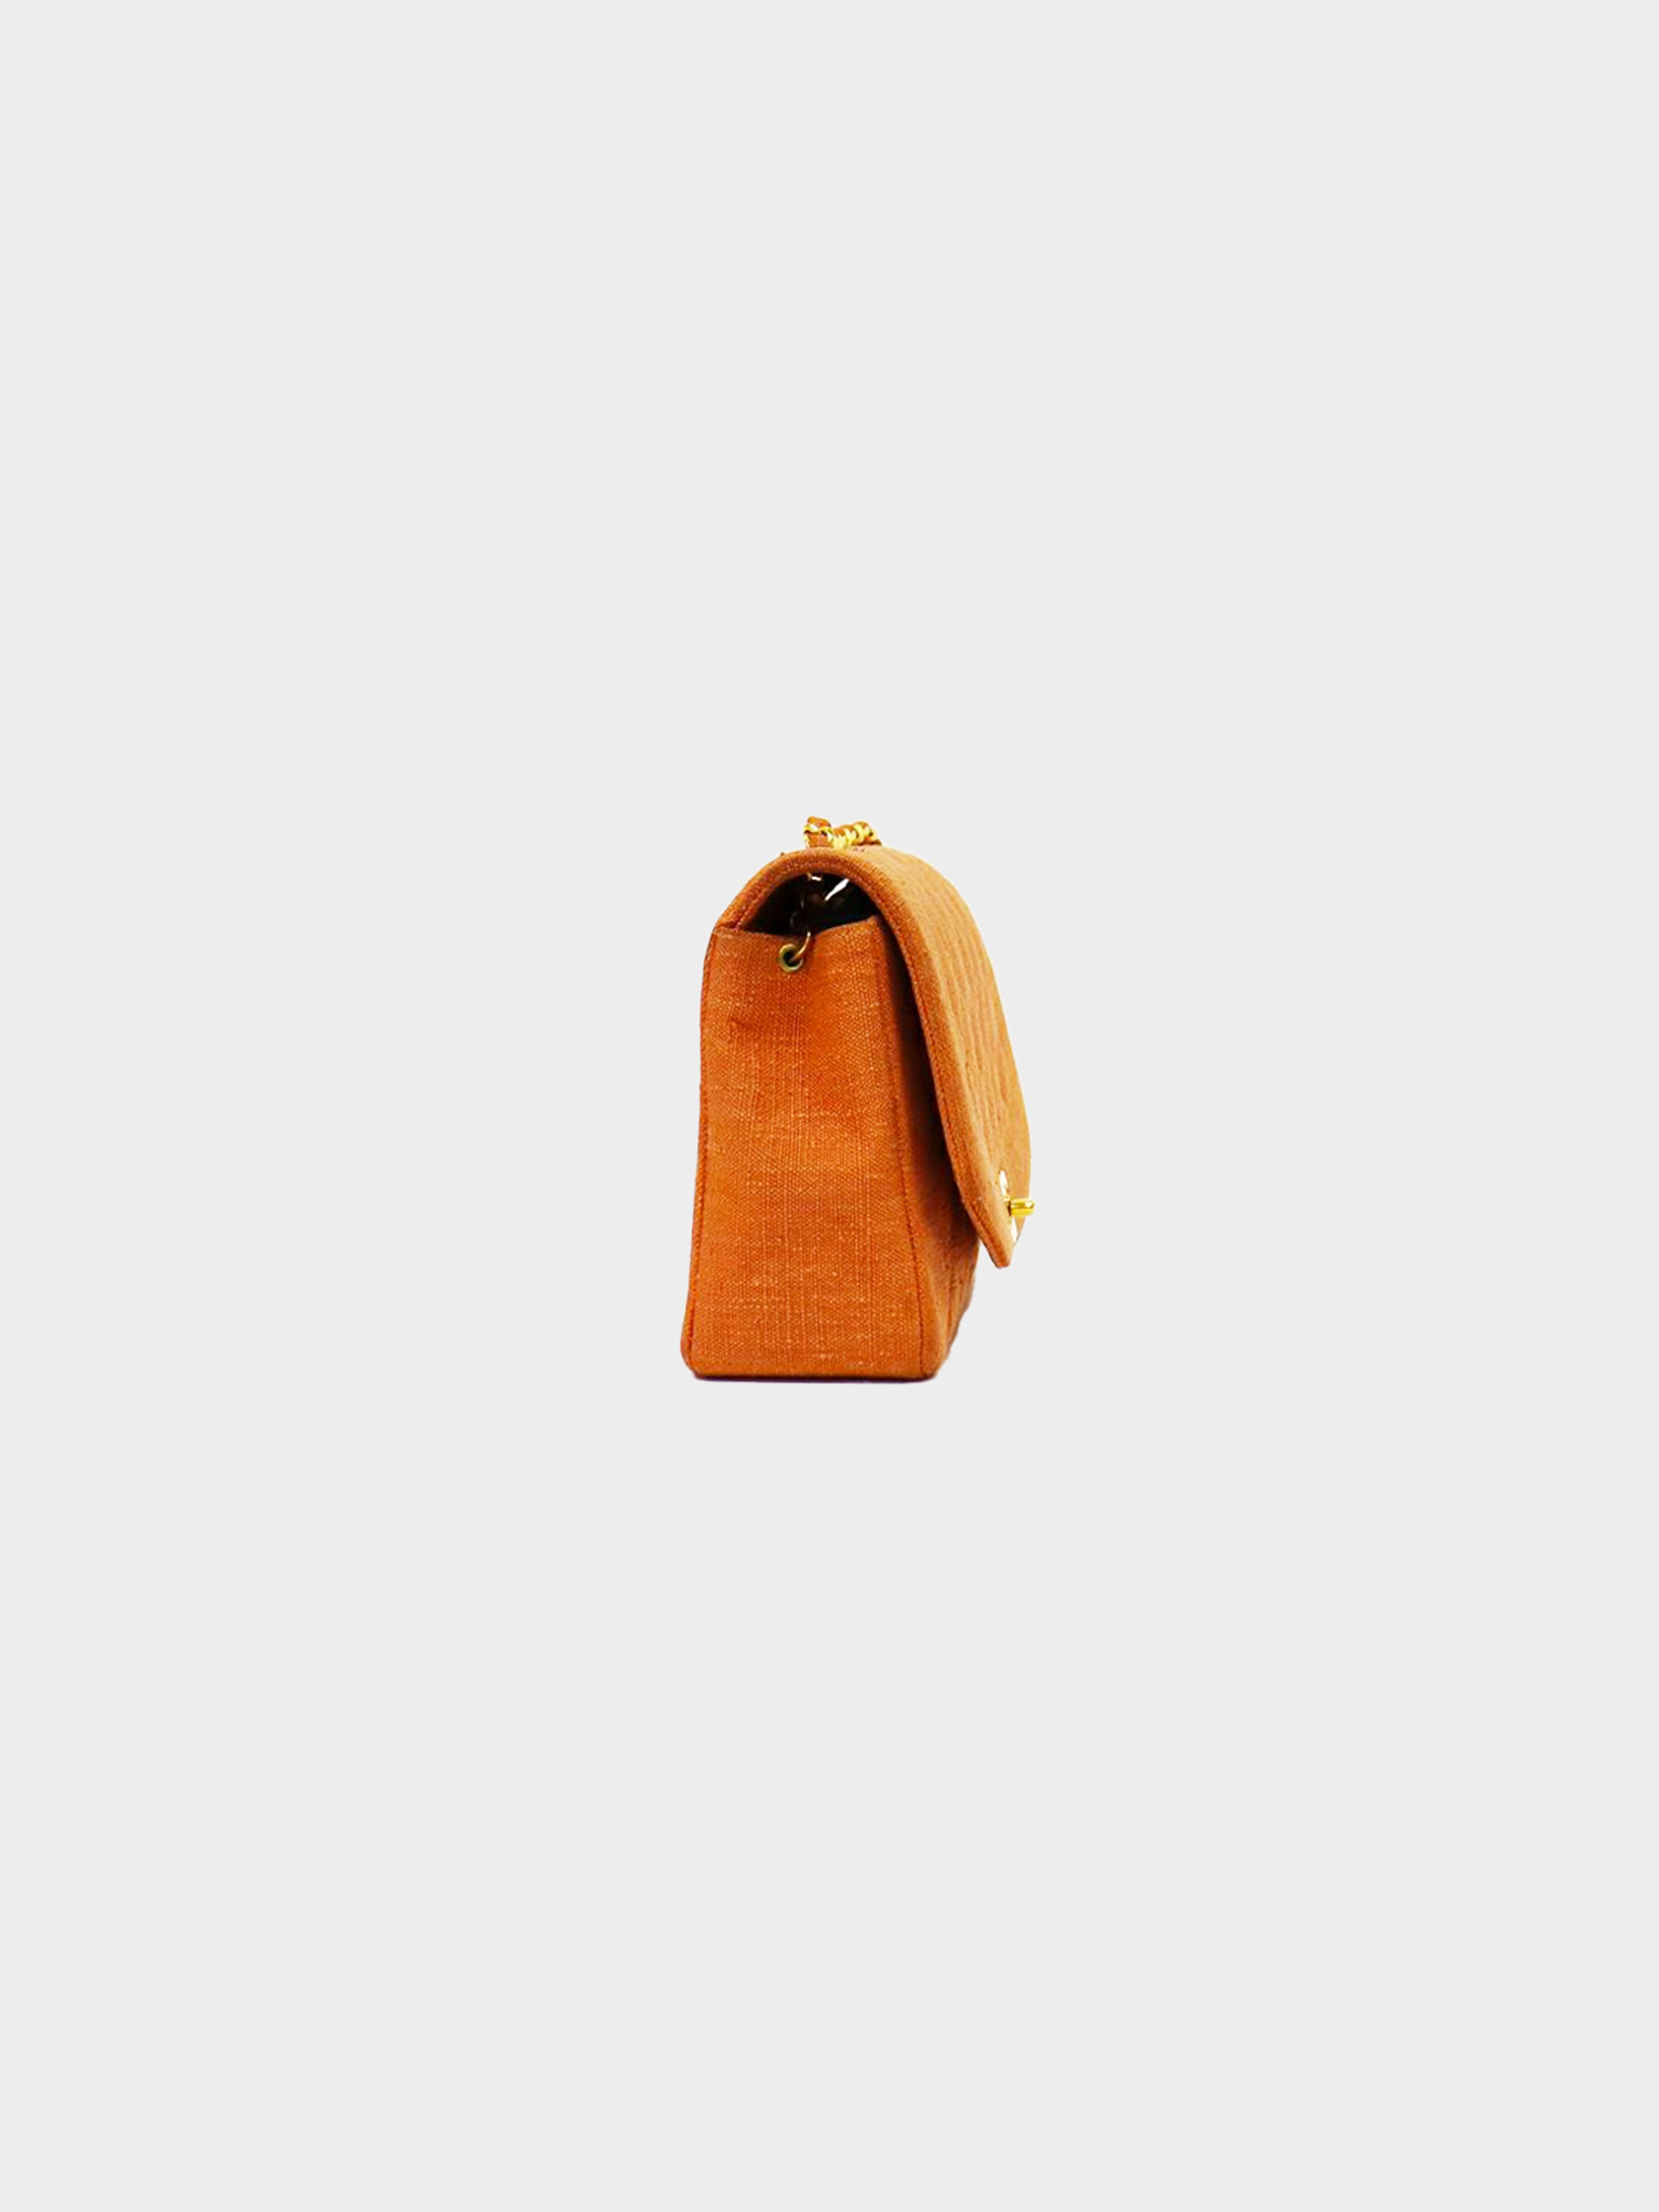 Chanel 1992-1994 Orange Diana Turn Lock Shoulder Bag